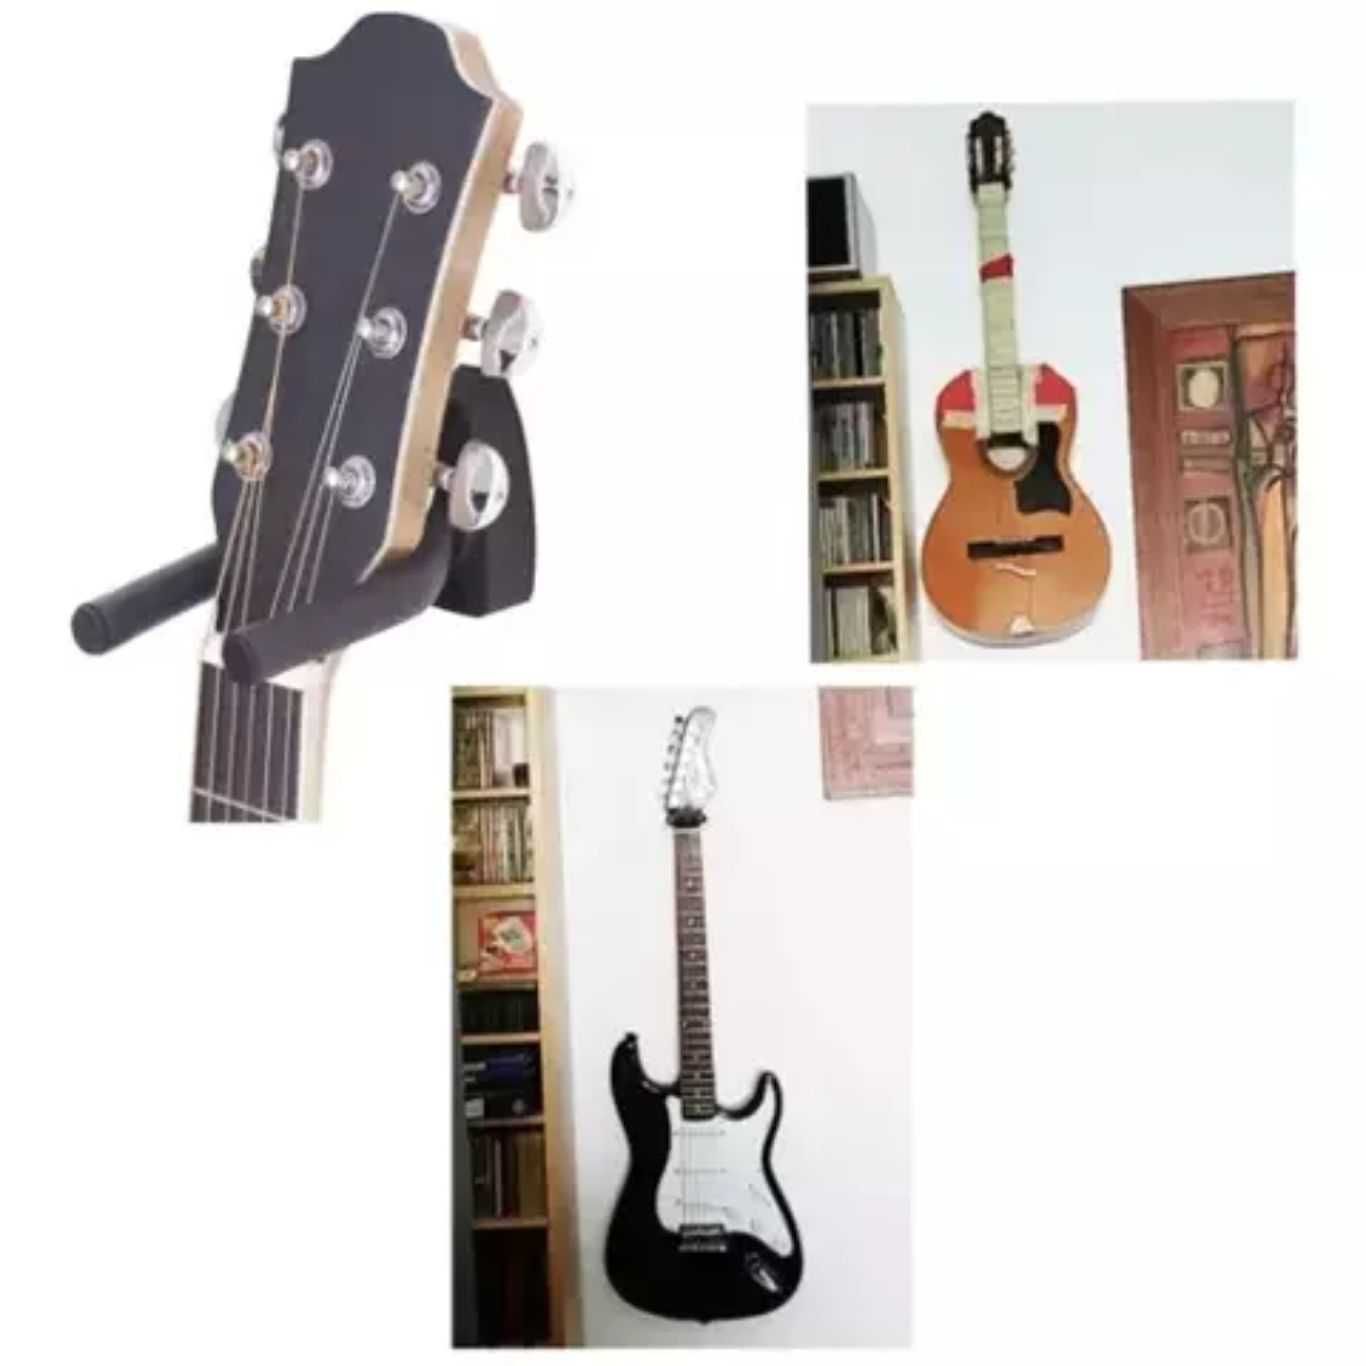 Закачалка за китара на стена стойка държач китари акустична класическа